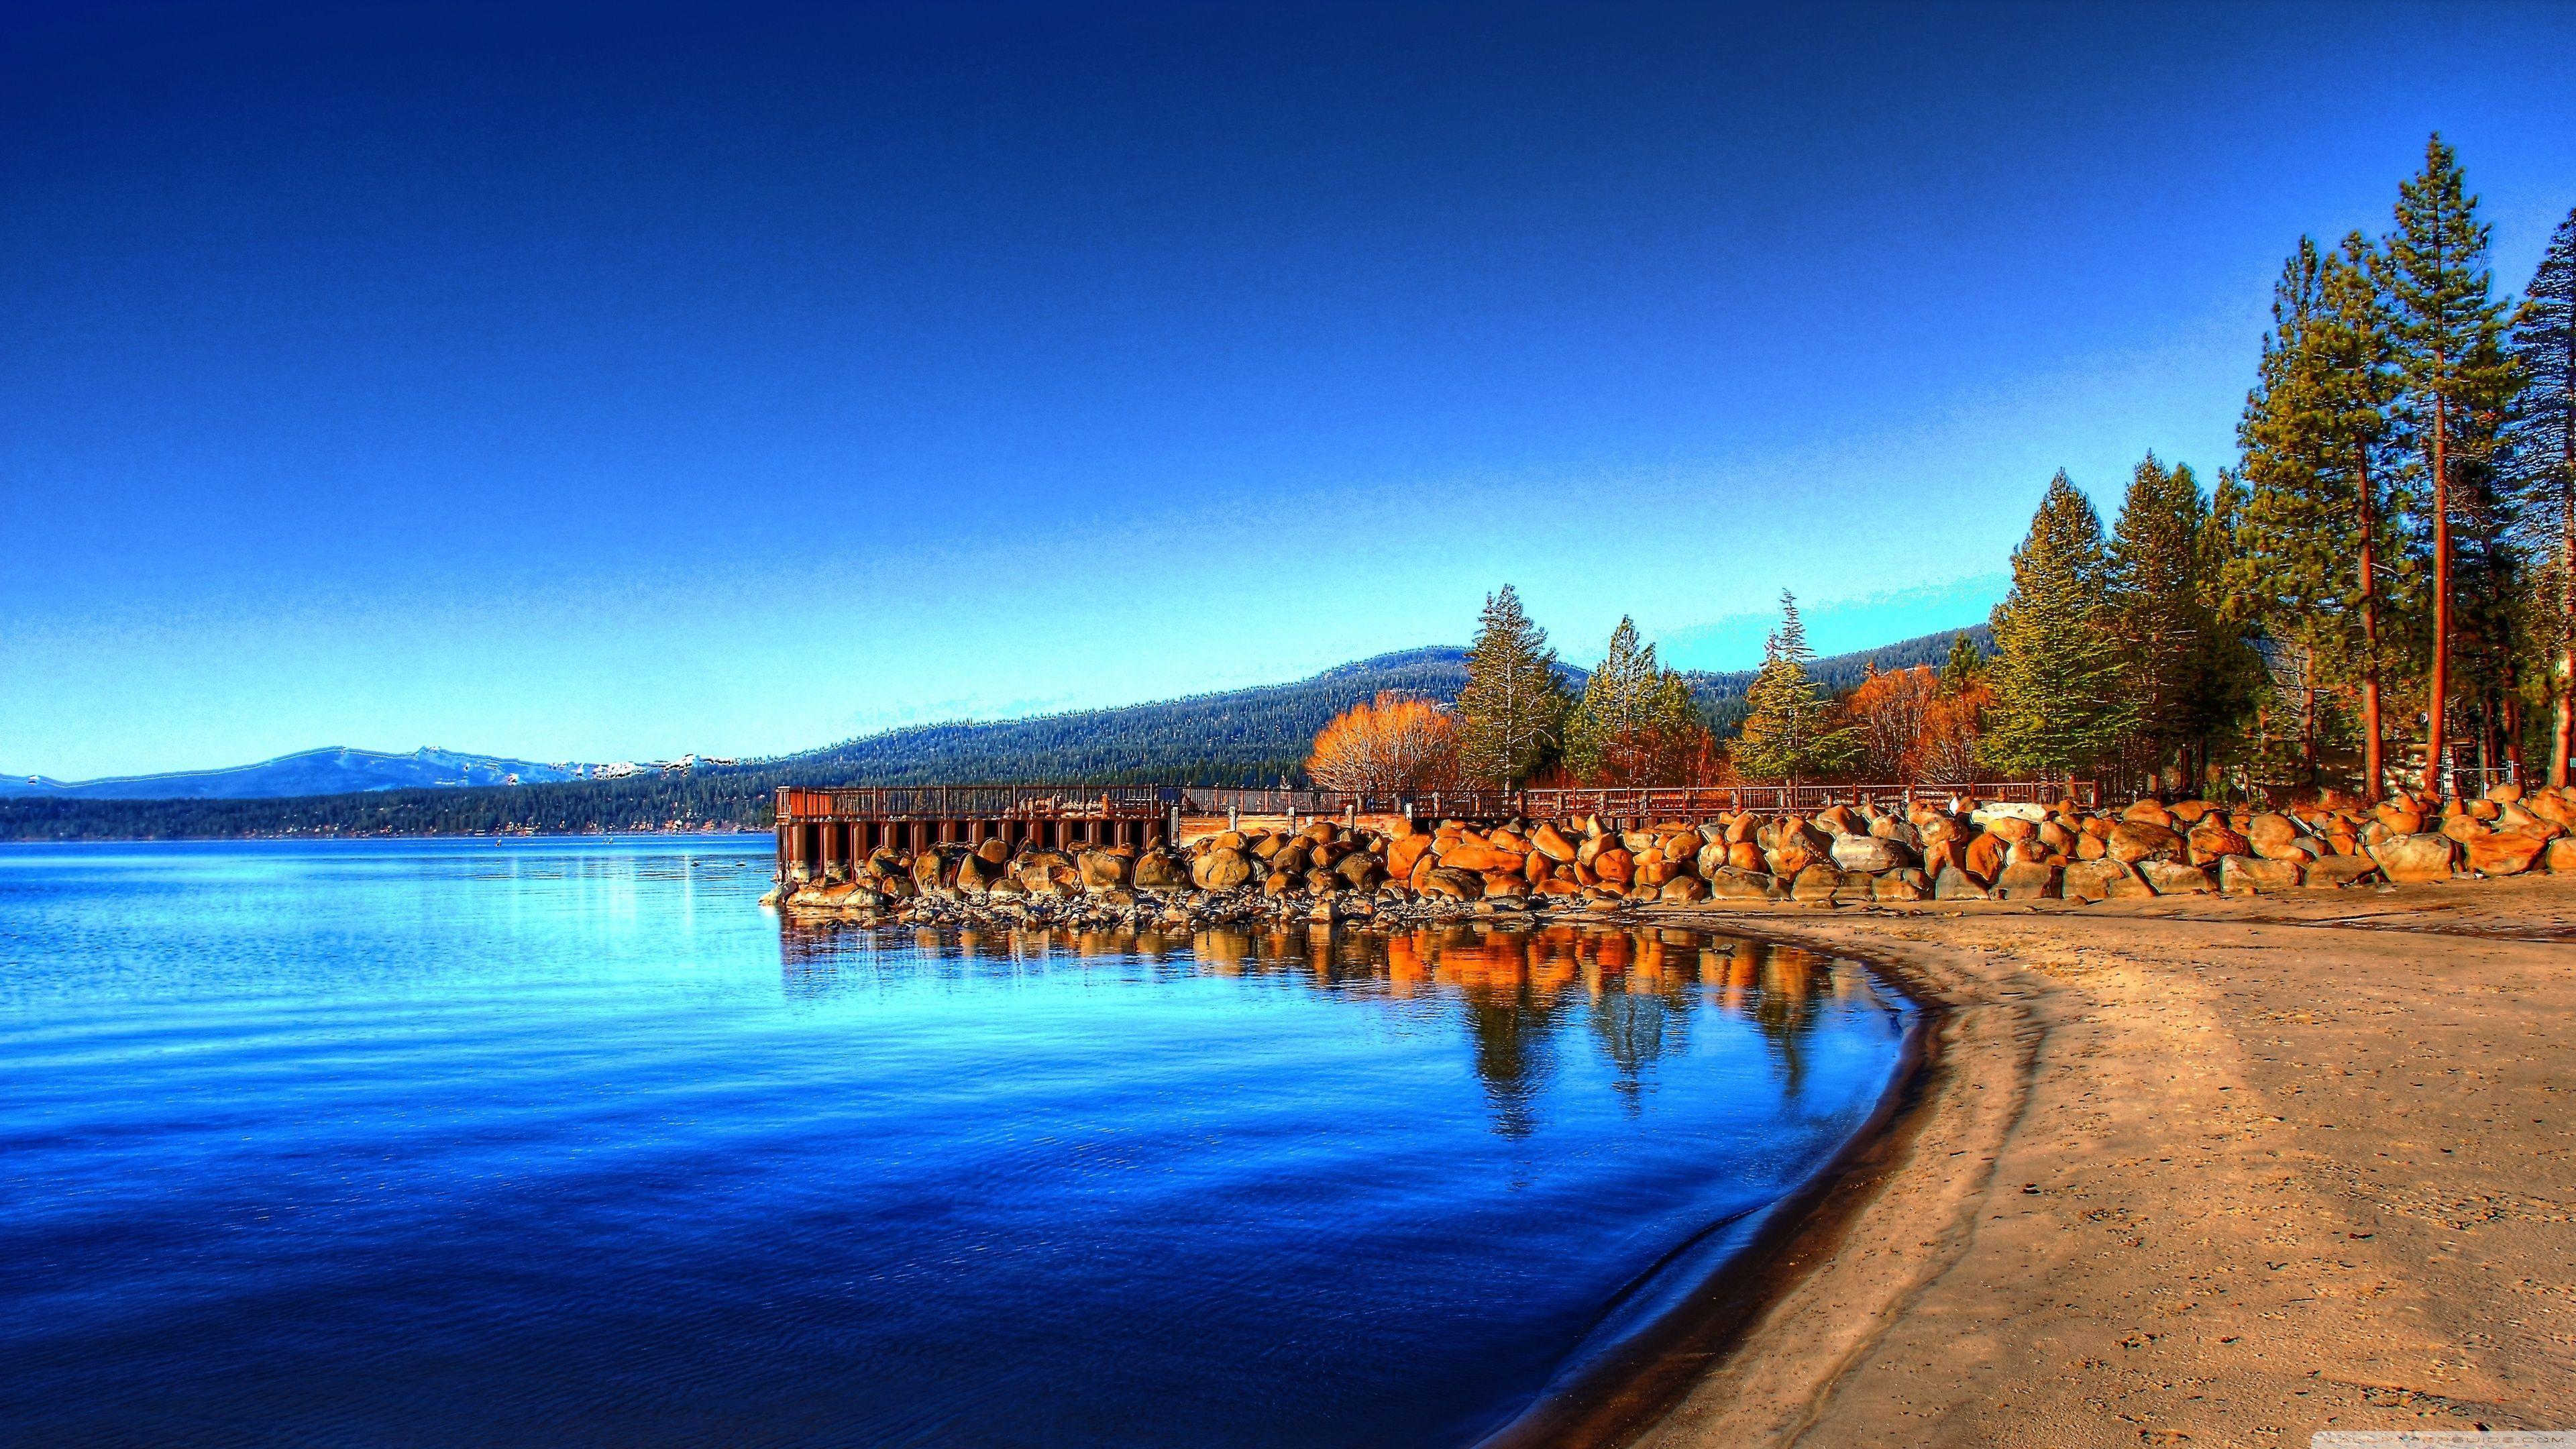 Lake Tahoe Ultra HD Desktop Background Wallpaper for 4K UHD TV, Widescreen & UltraWide Desktop & Laptop